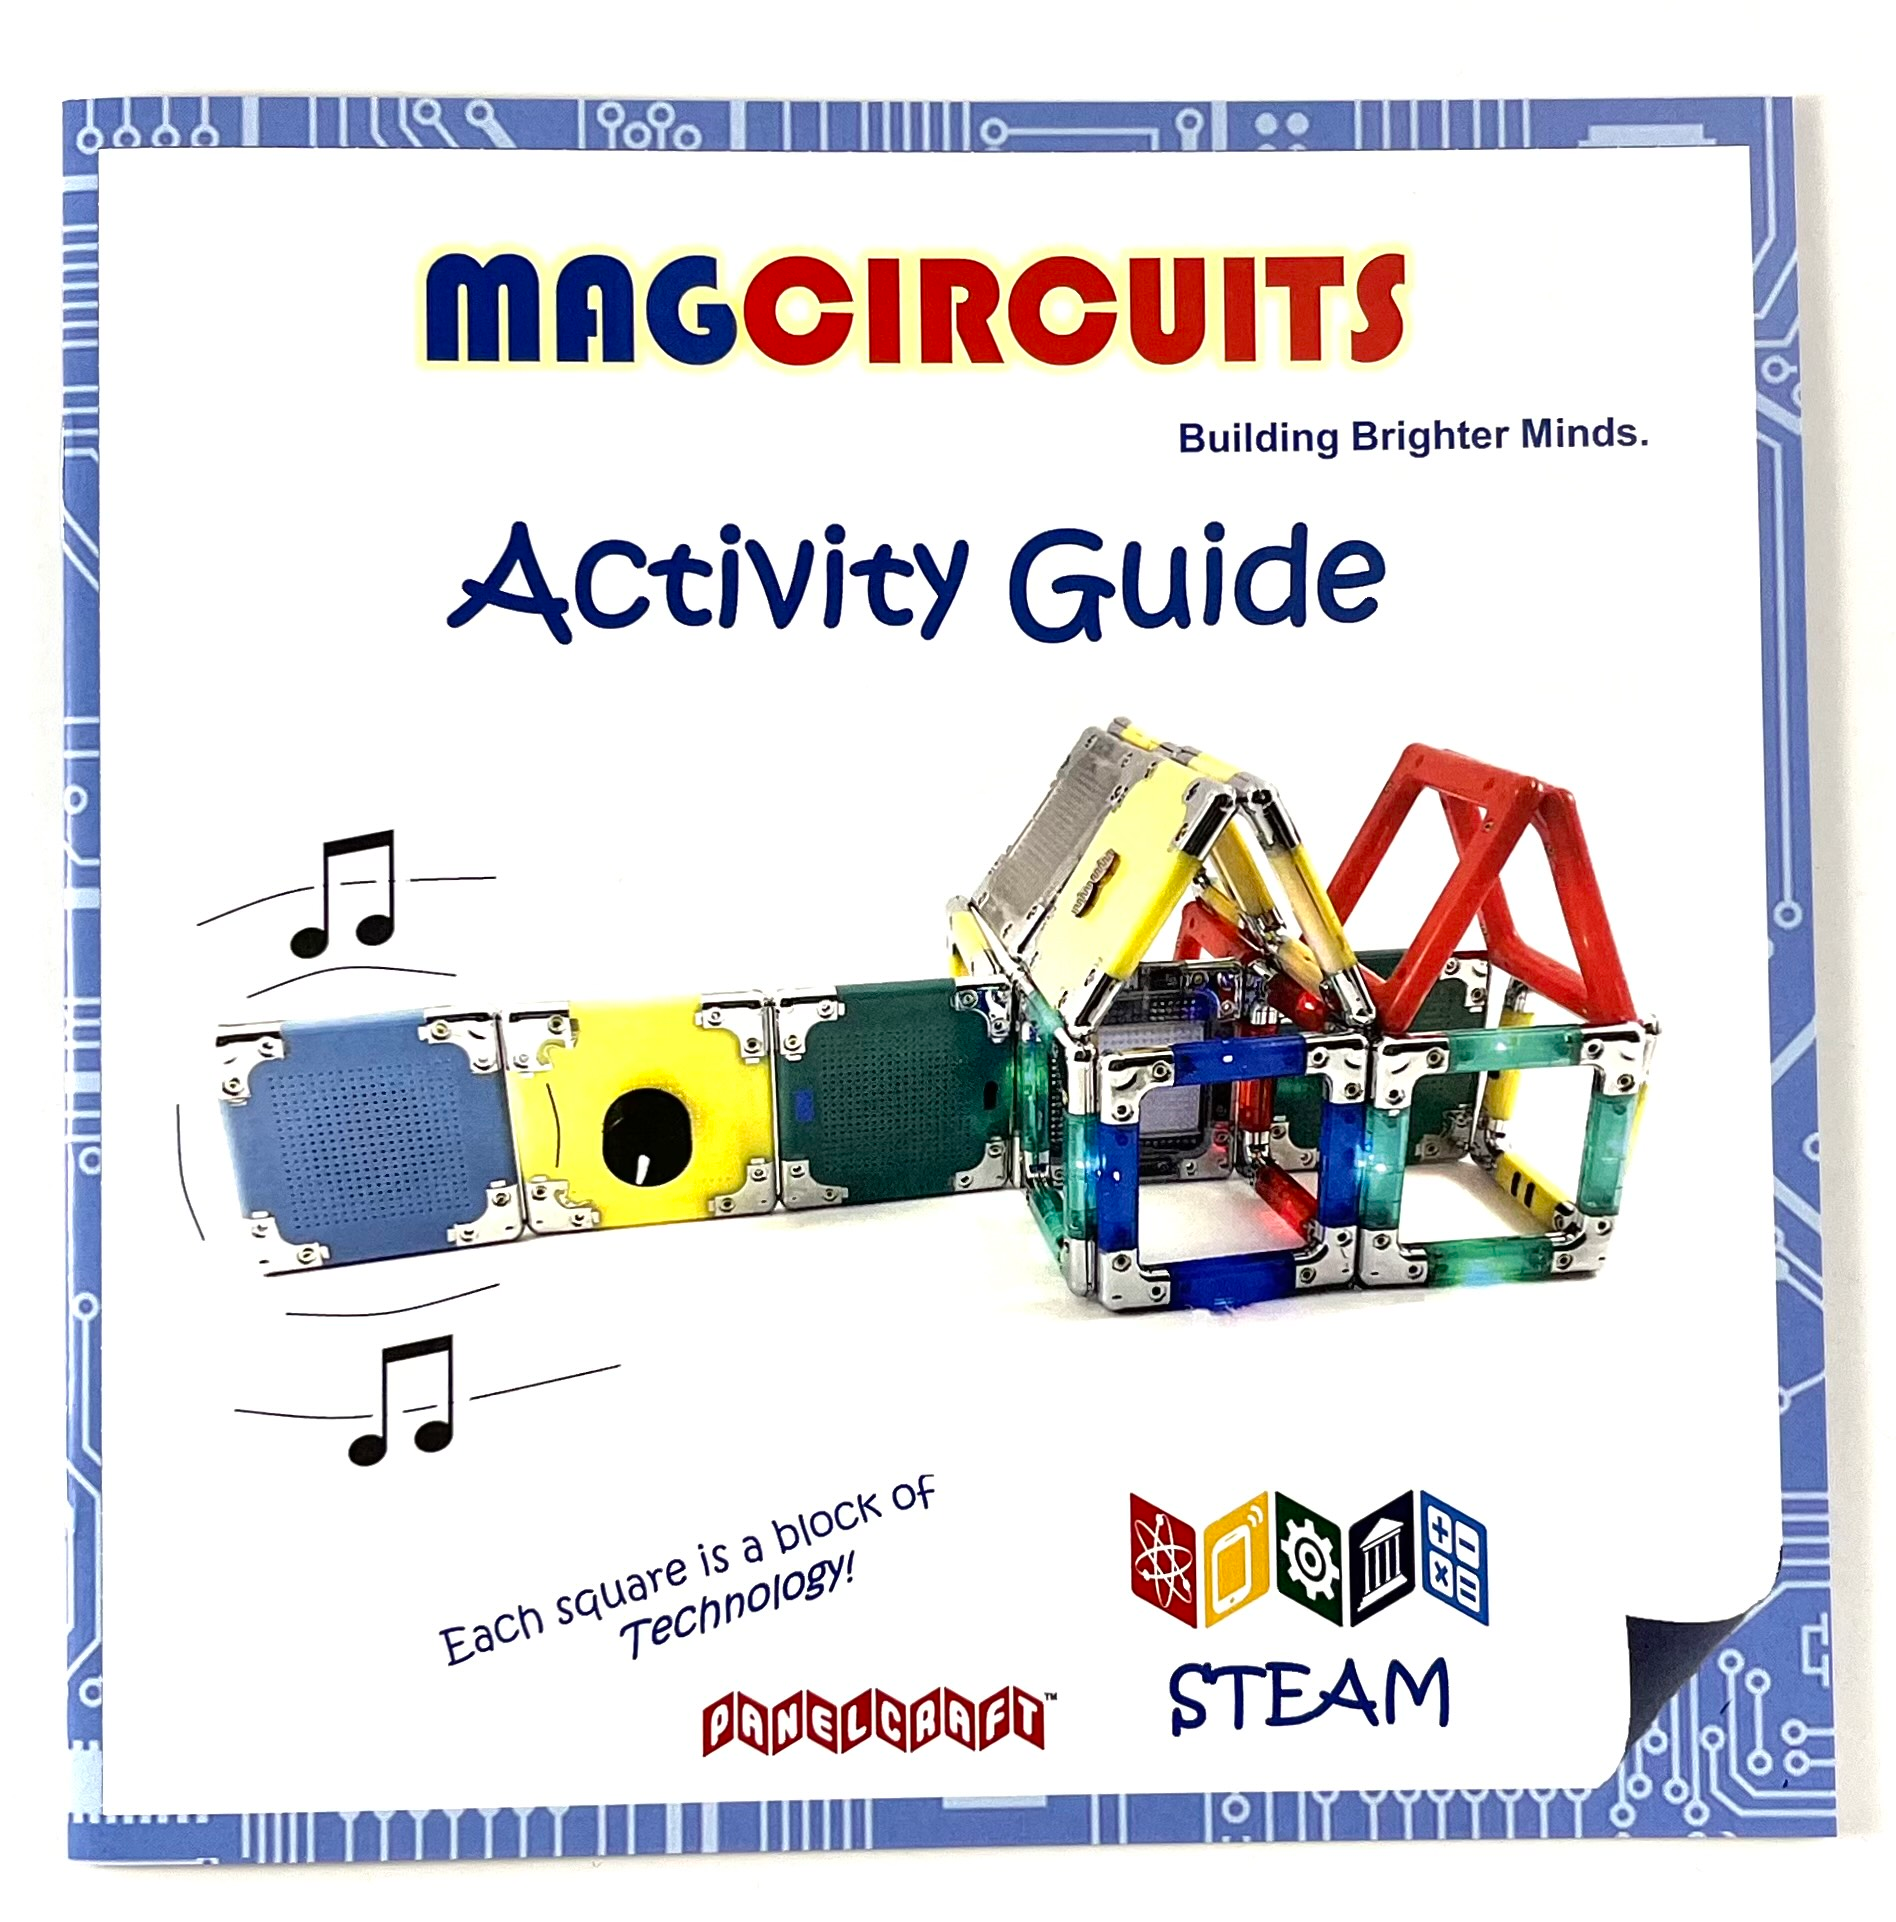 Magcircuits Explore Circuits 11 pc set